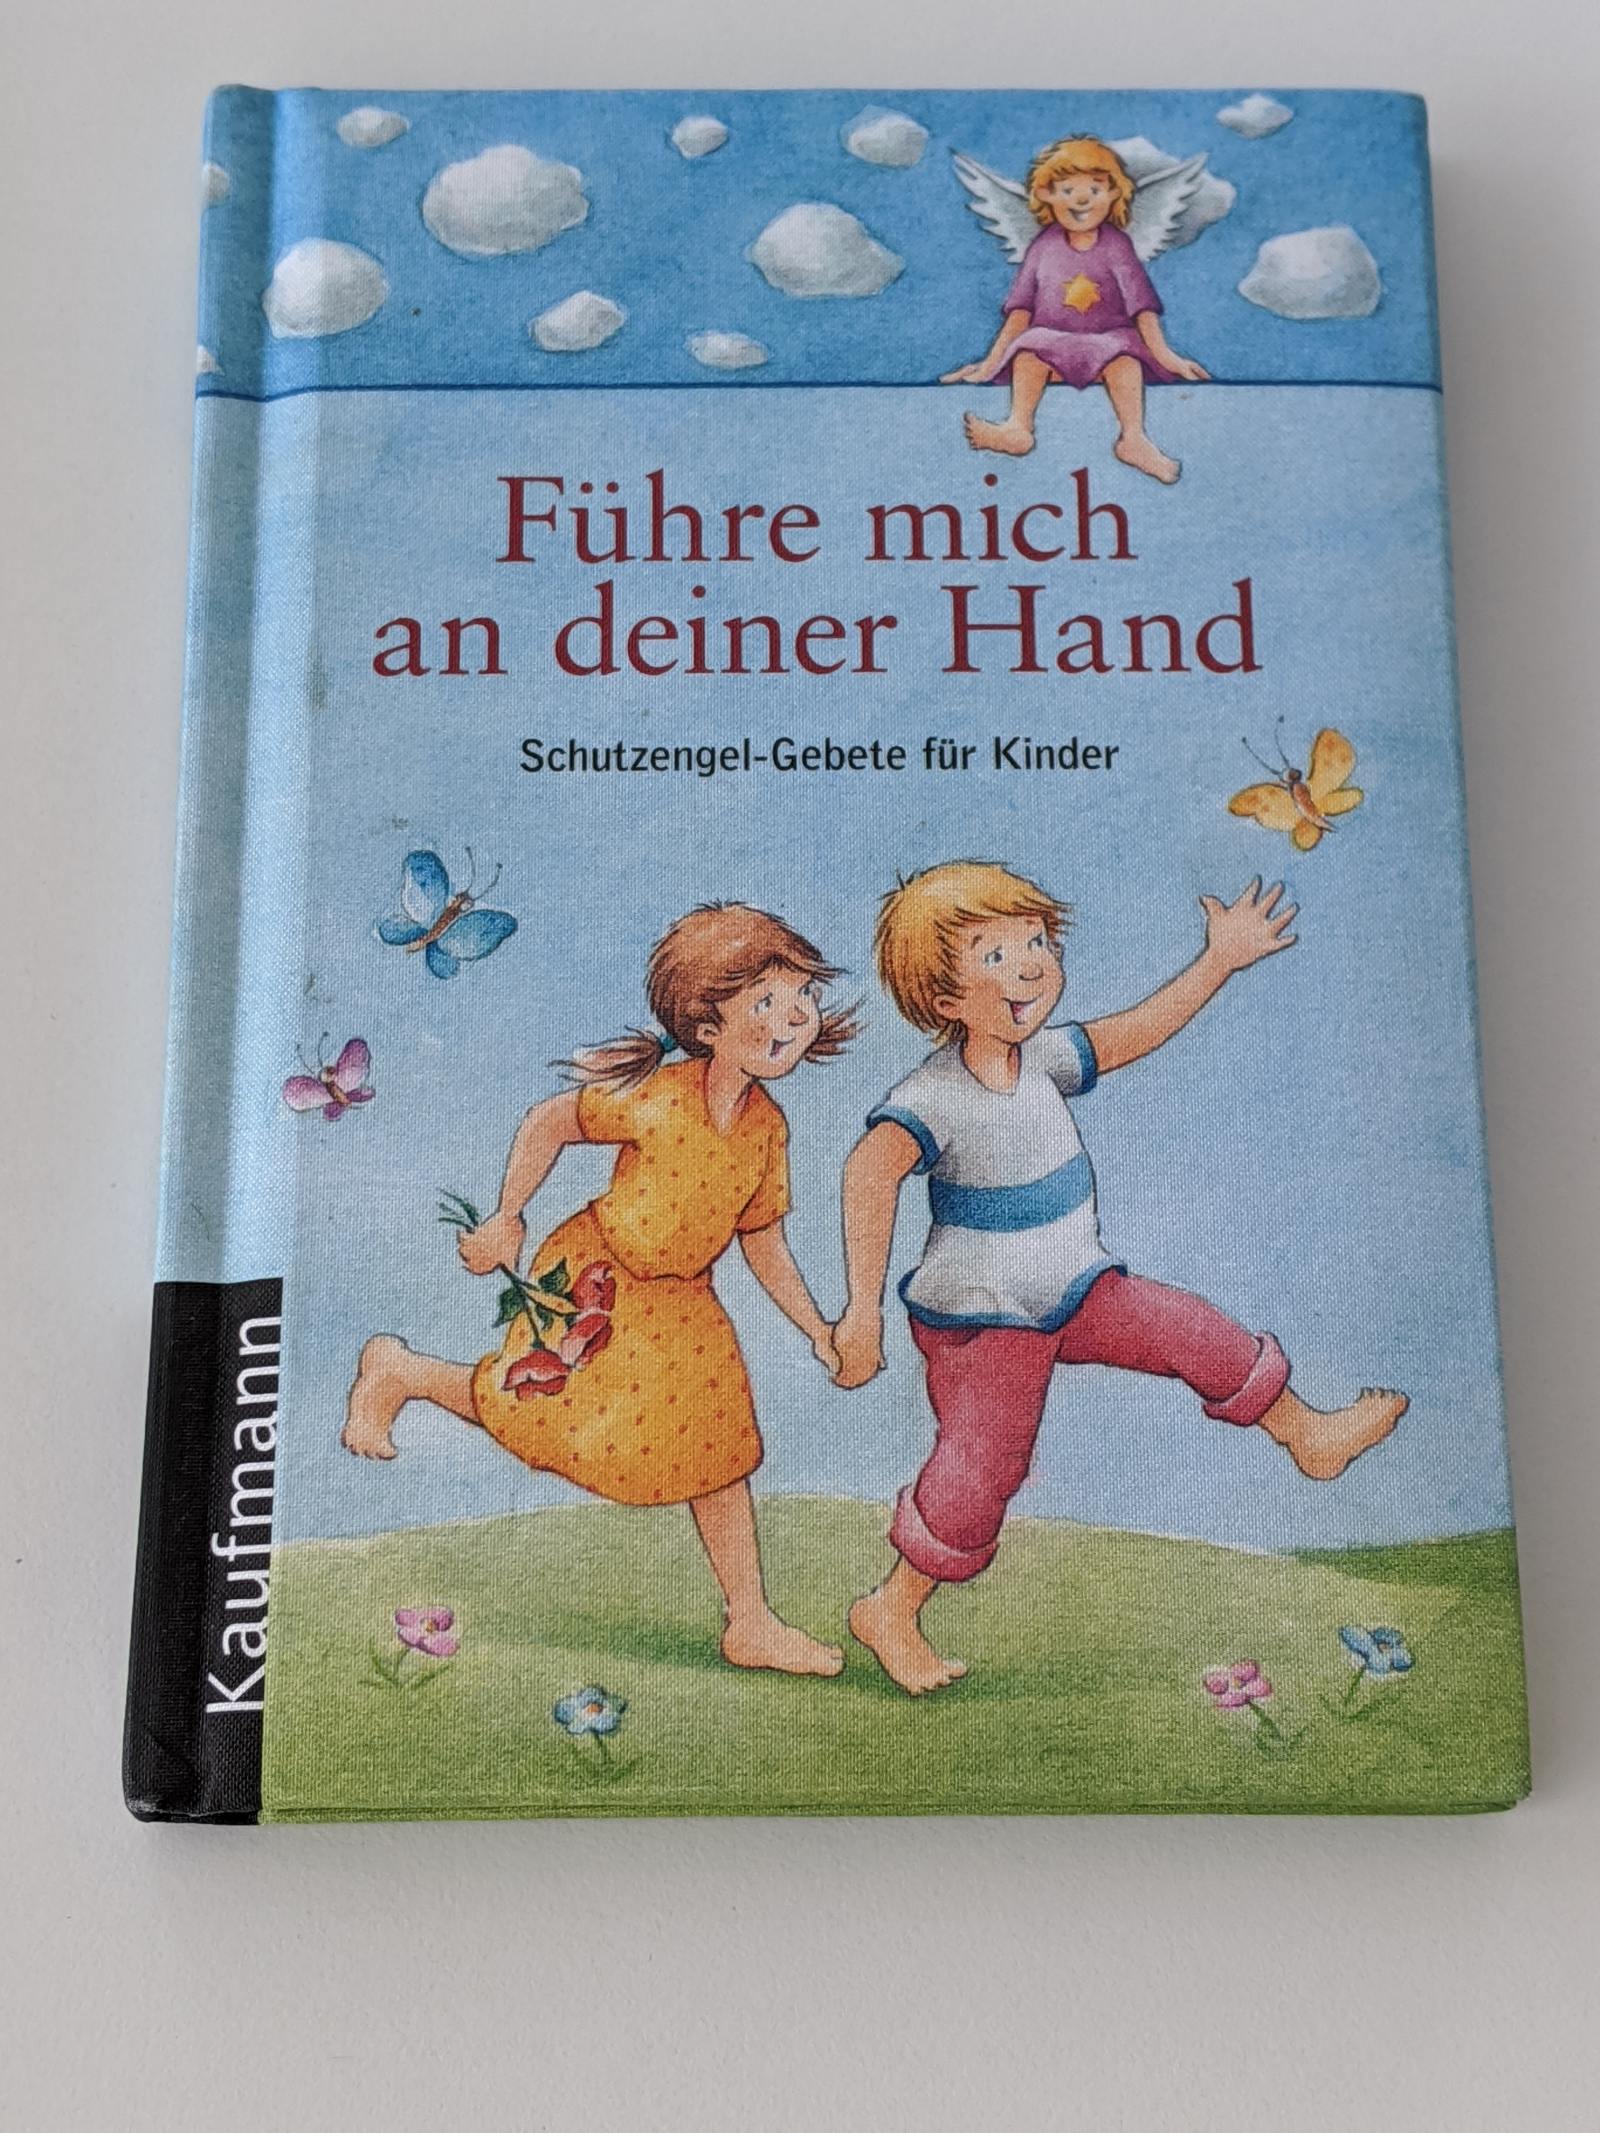 Führe mich an deiner Hand - Schutzengel-Gebete für Kinder - Martinelli, Vera (Herausgeber) und Stefan (Mitwirkender) Horst